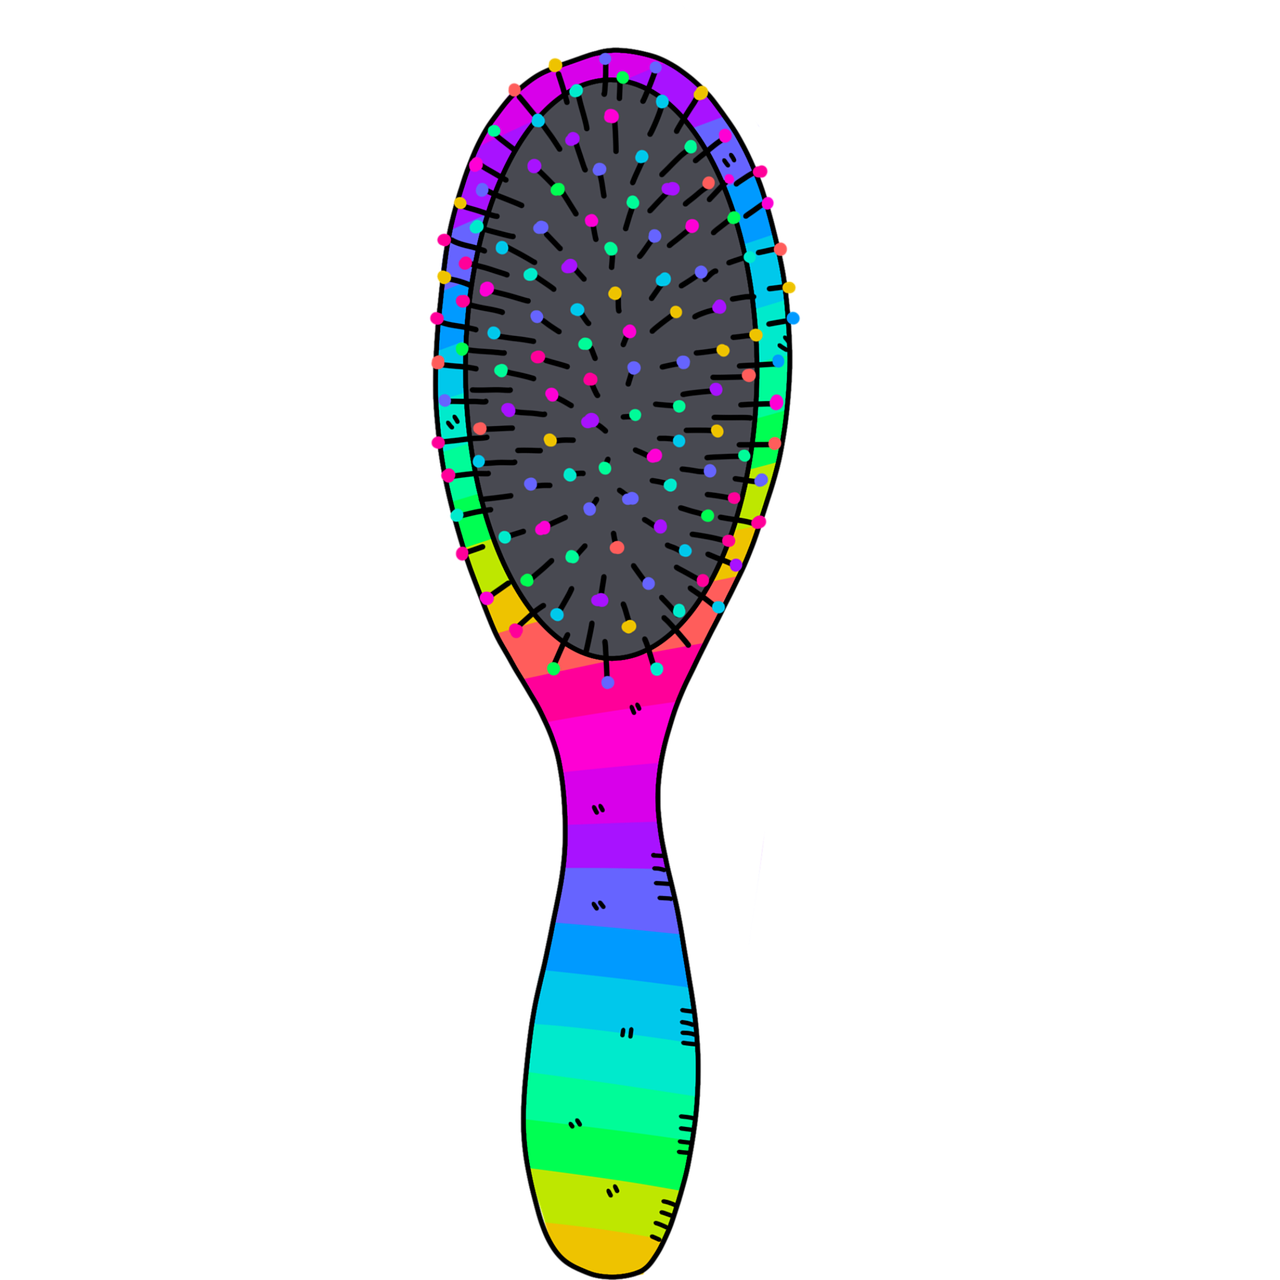 Hairbrush PNG Image File